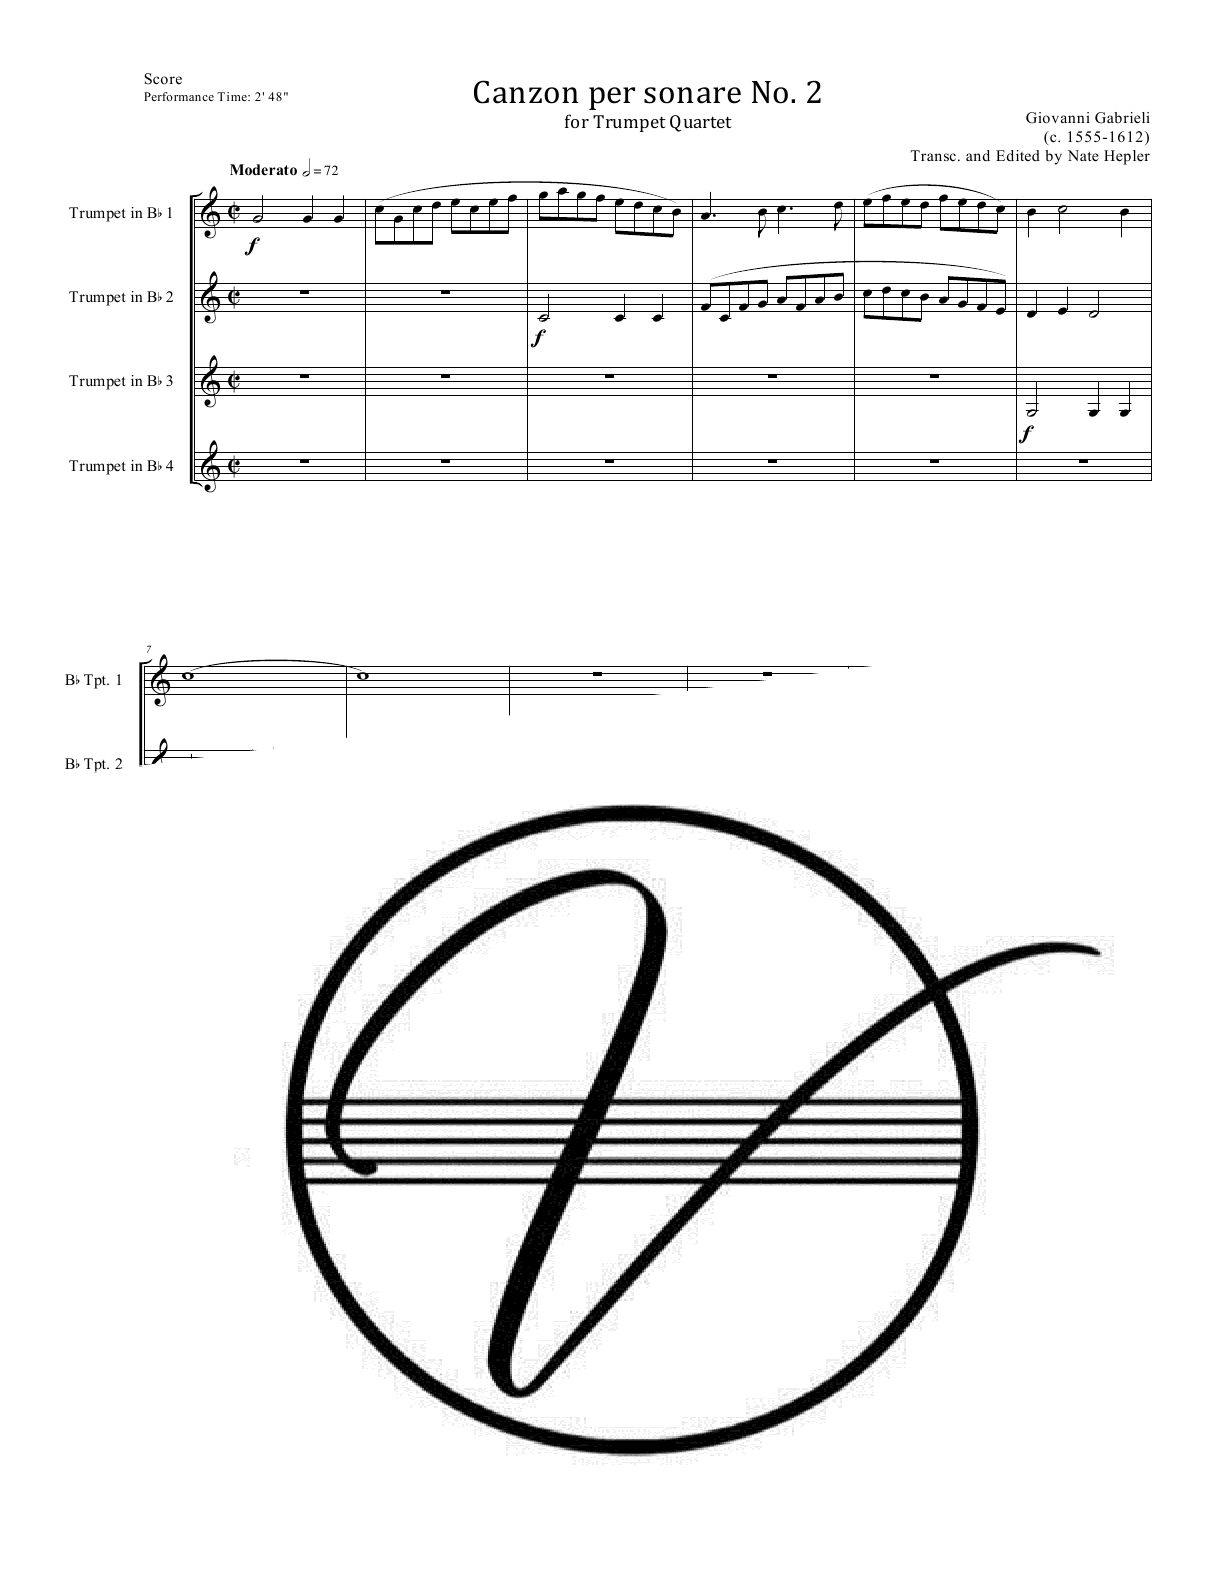 Gabrieli - Canzon per sonare No. 2 (Trumpet Quartet)